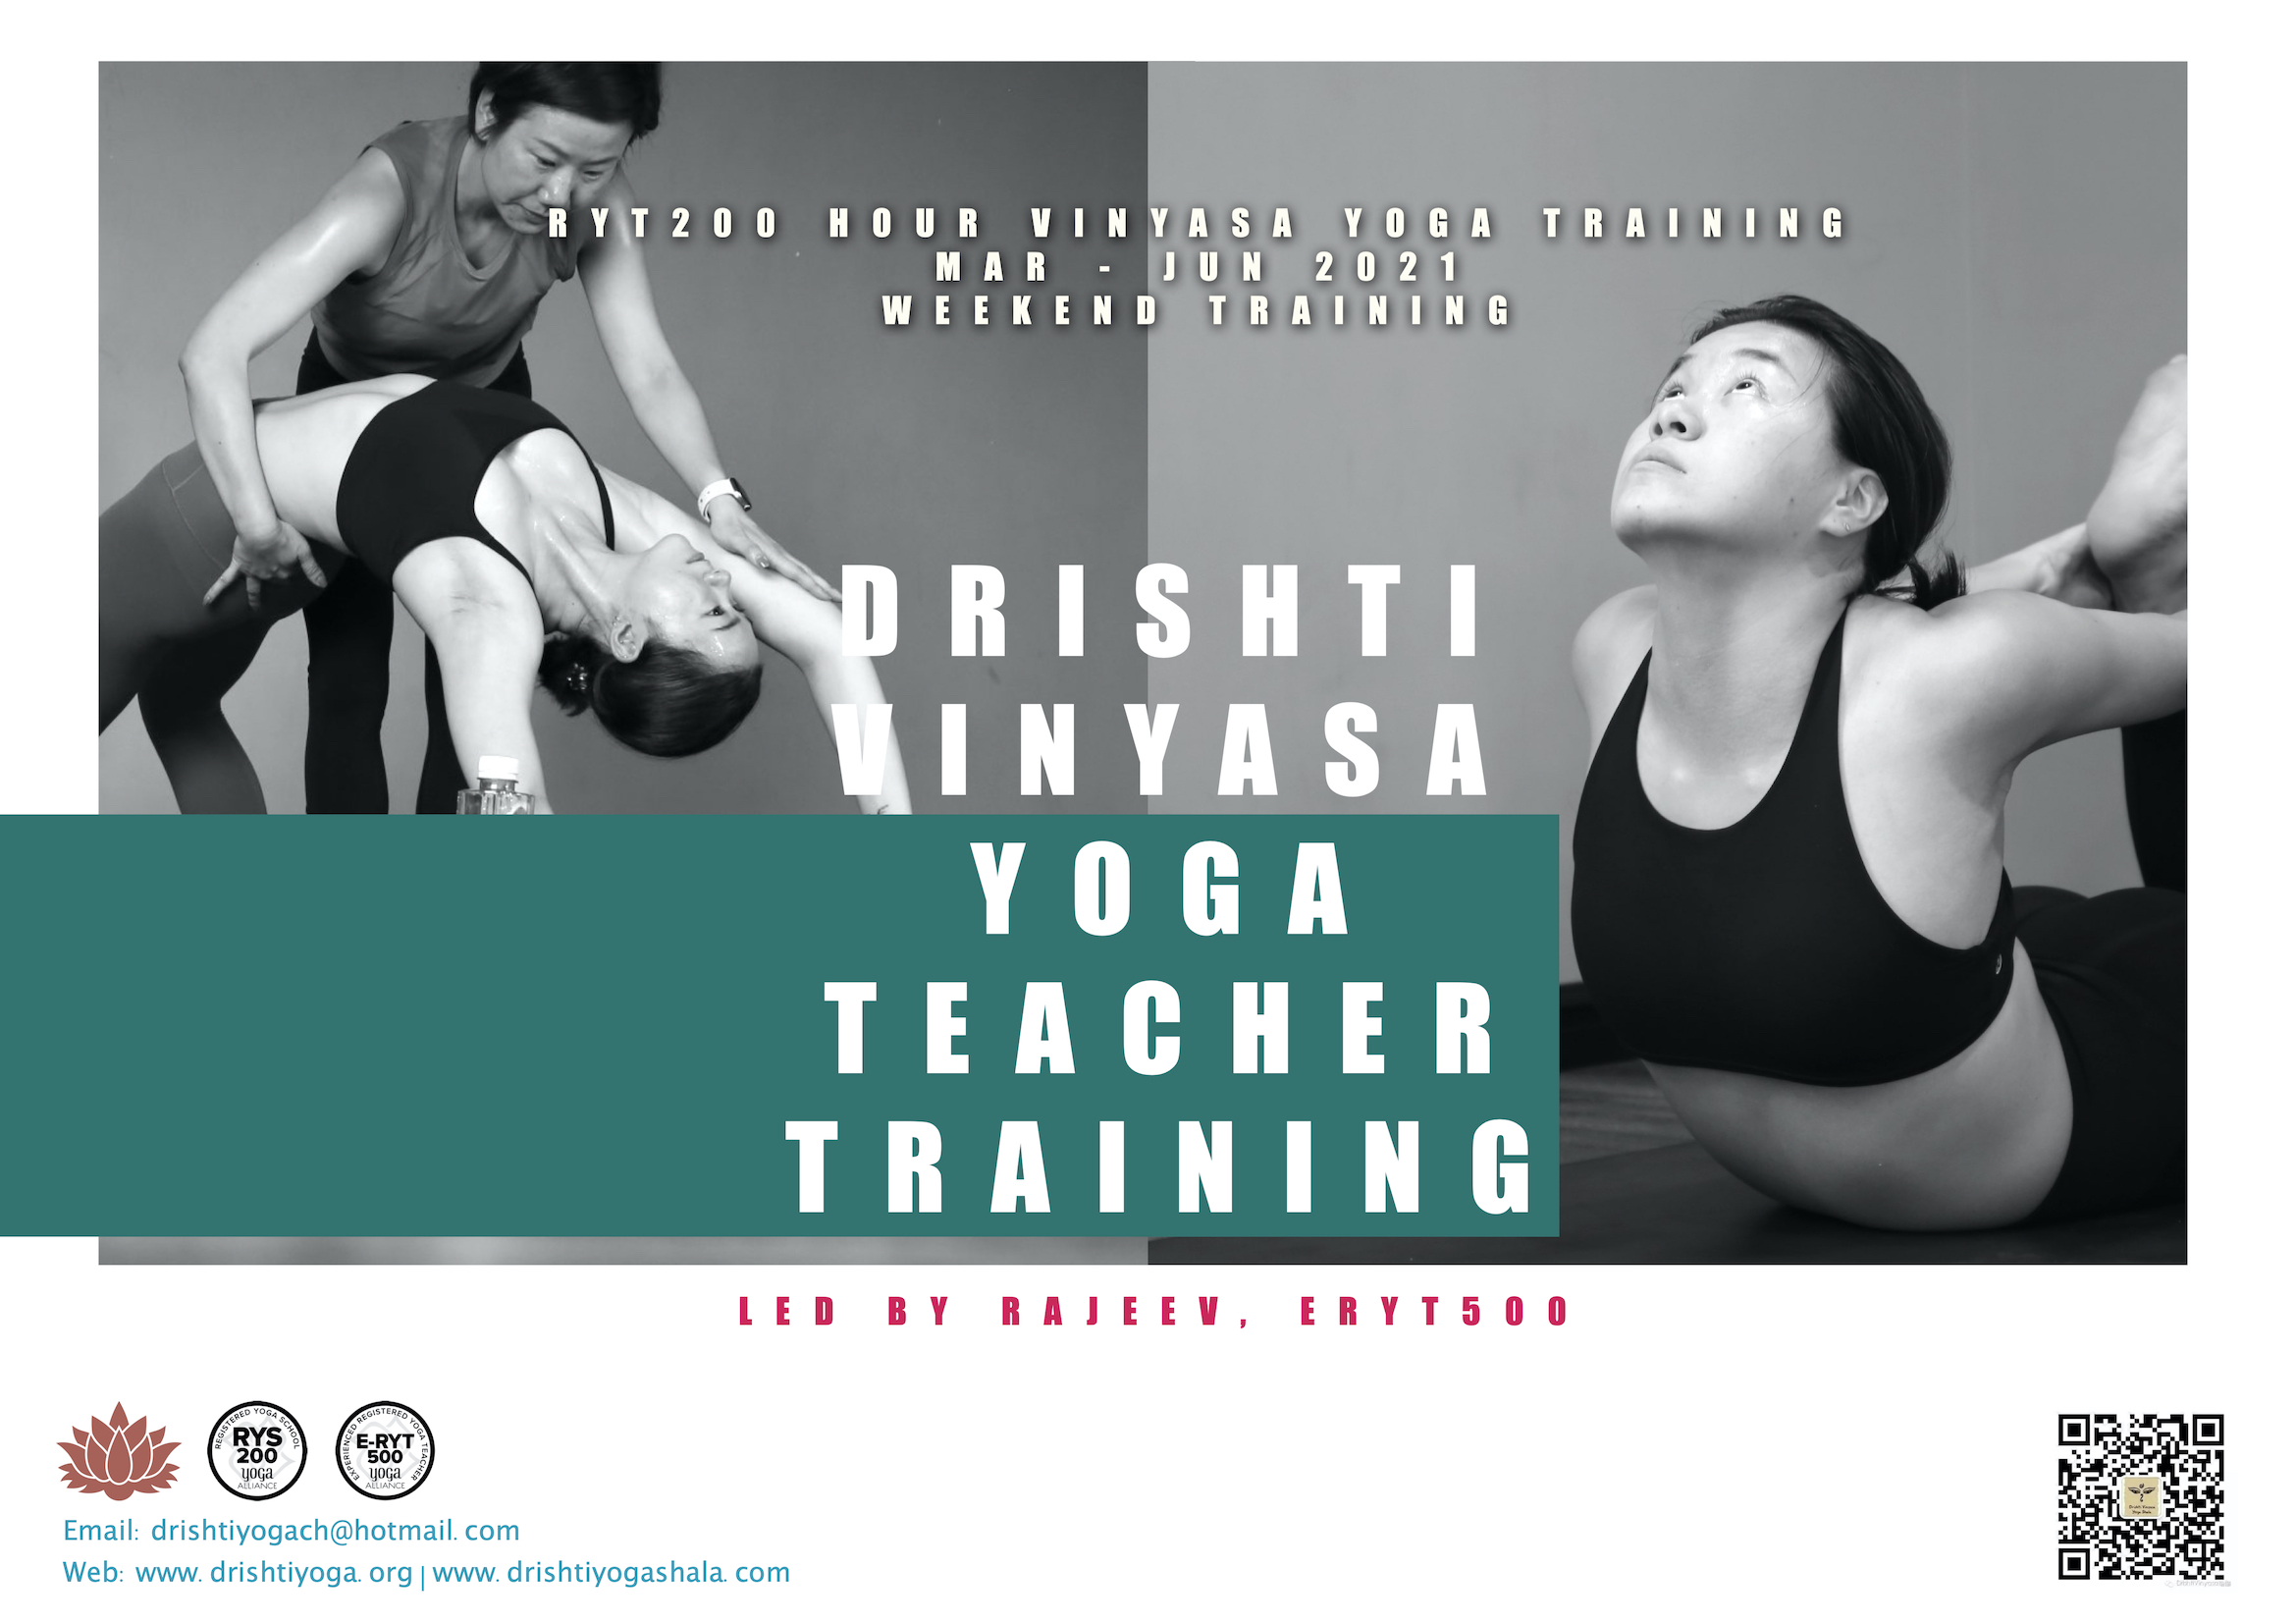 Drishti Vinyasa Yoga Shanghai, China; Trivandrum, India; Goa, India.Vinyasa Yoga India